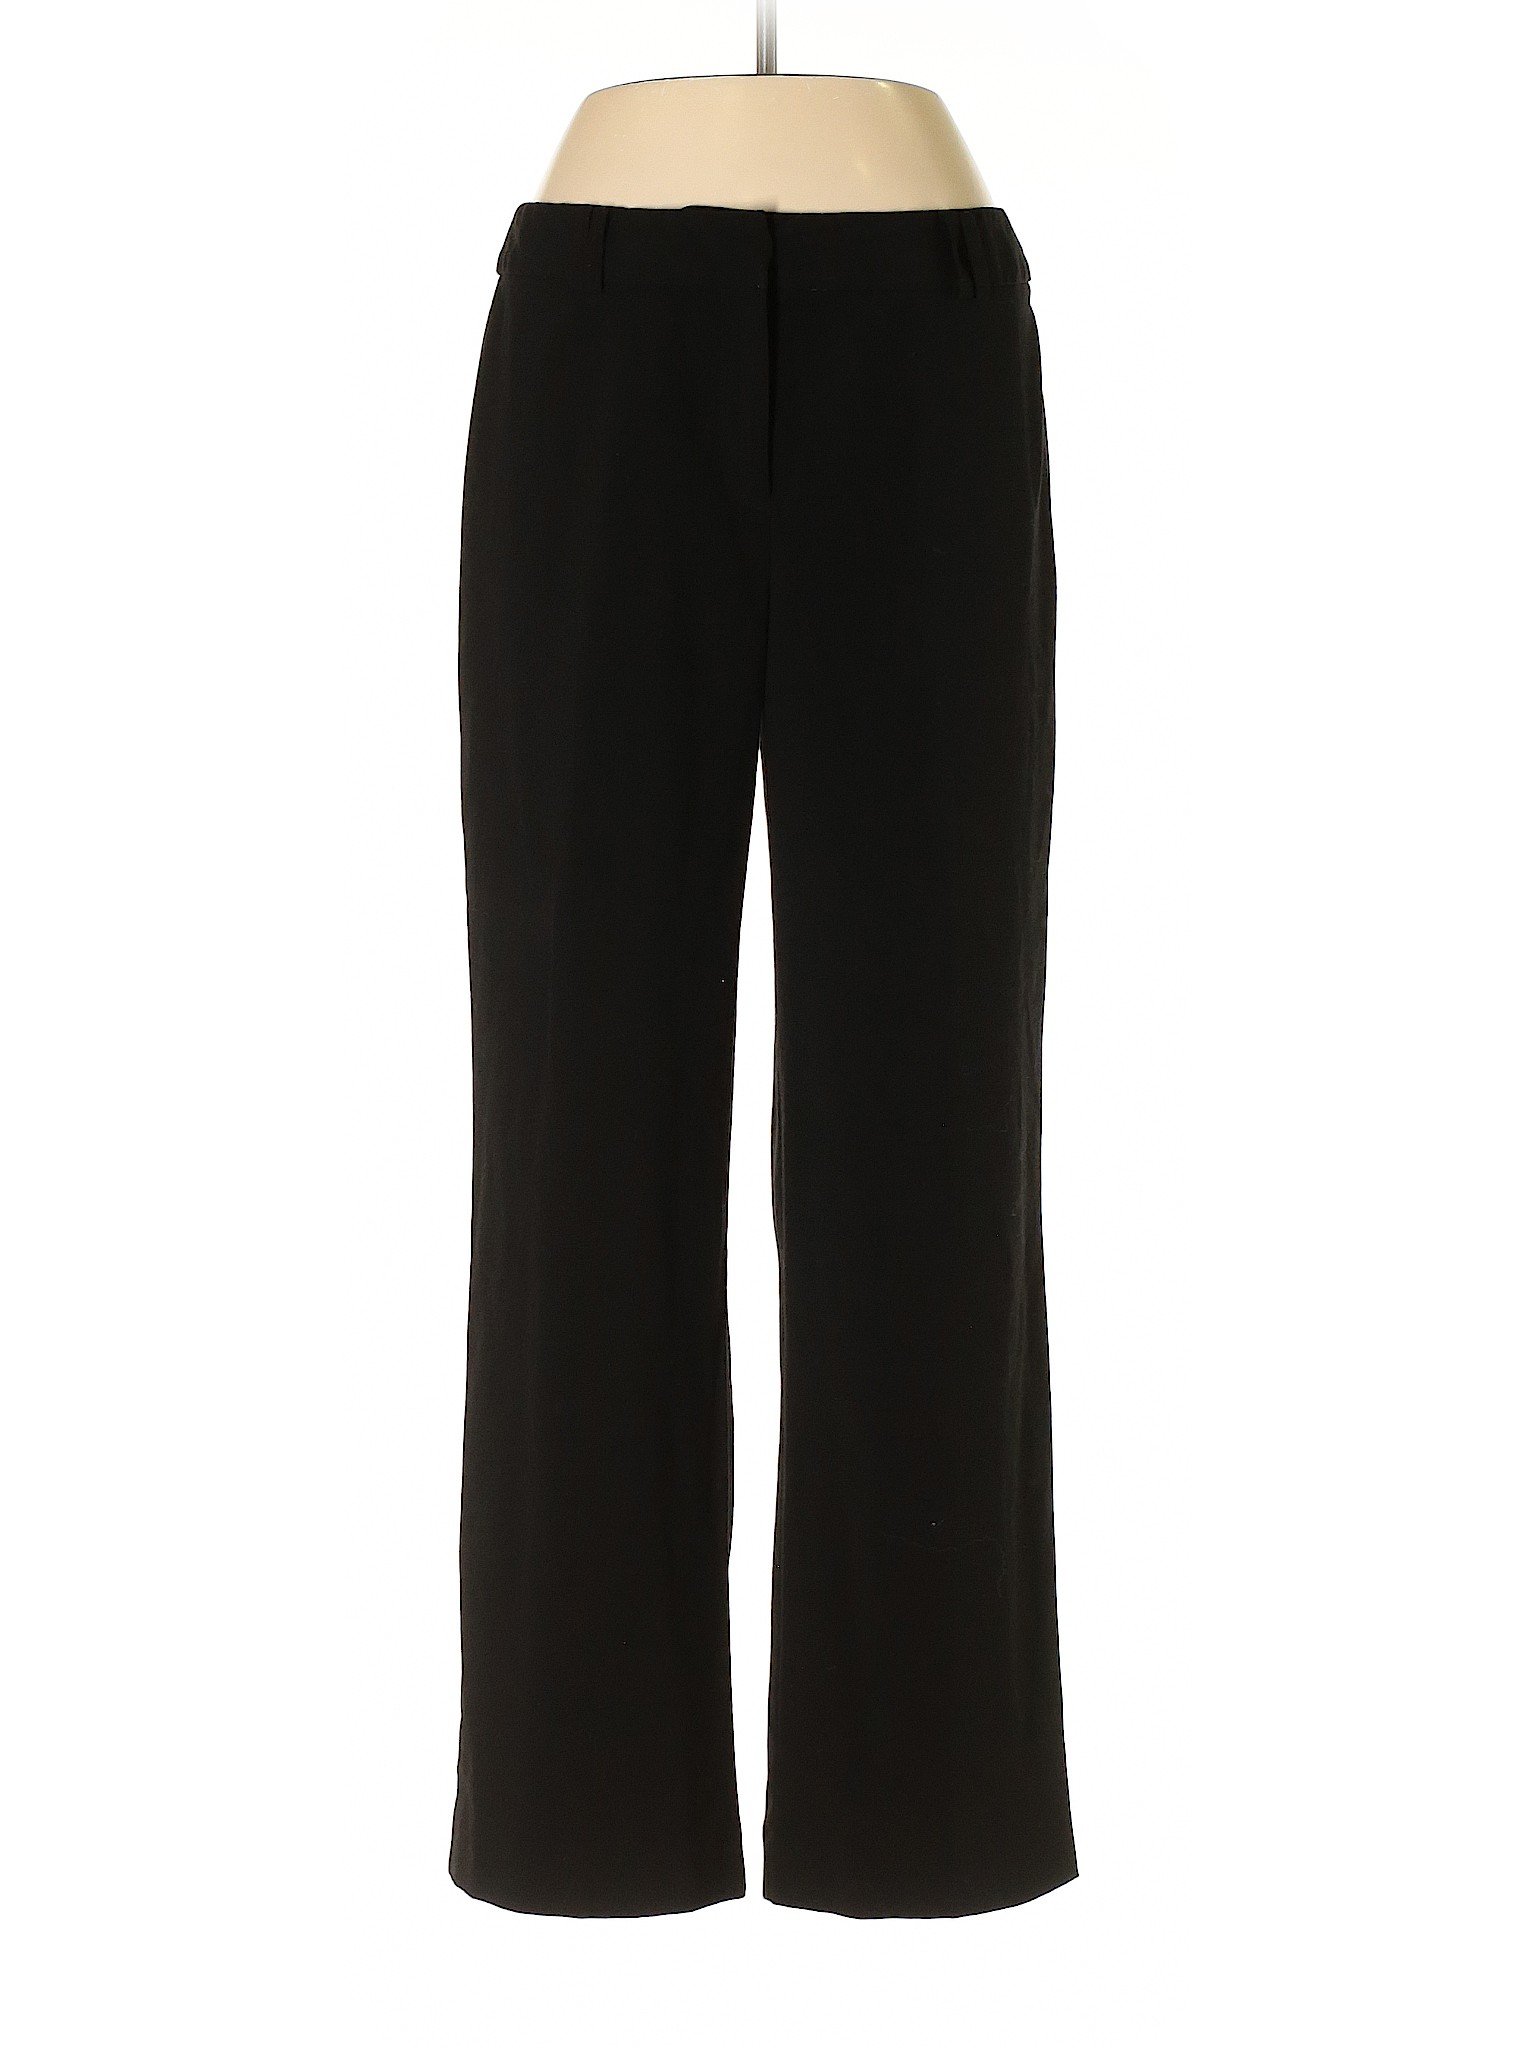 Jones & Co Women Black Dress Pants 8 | eBay